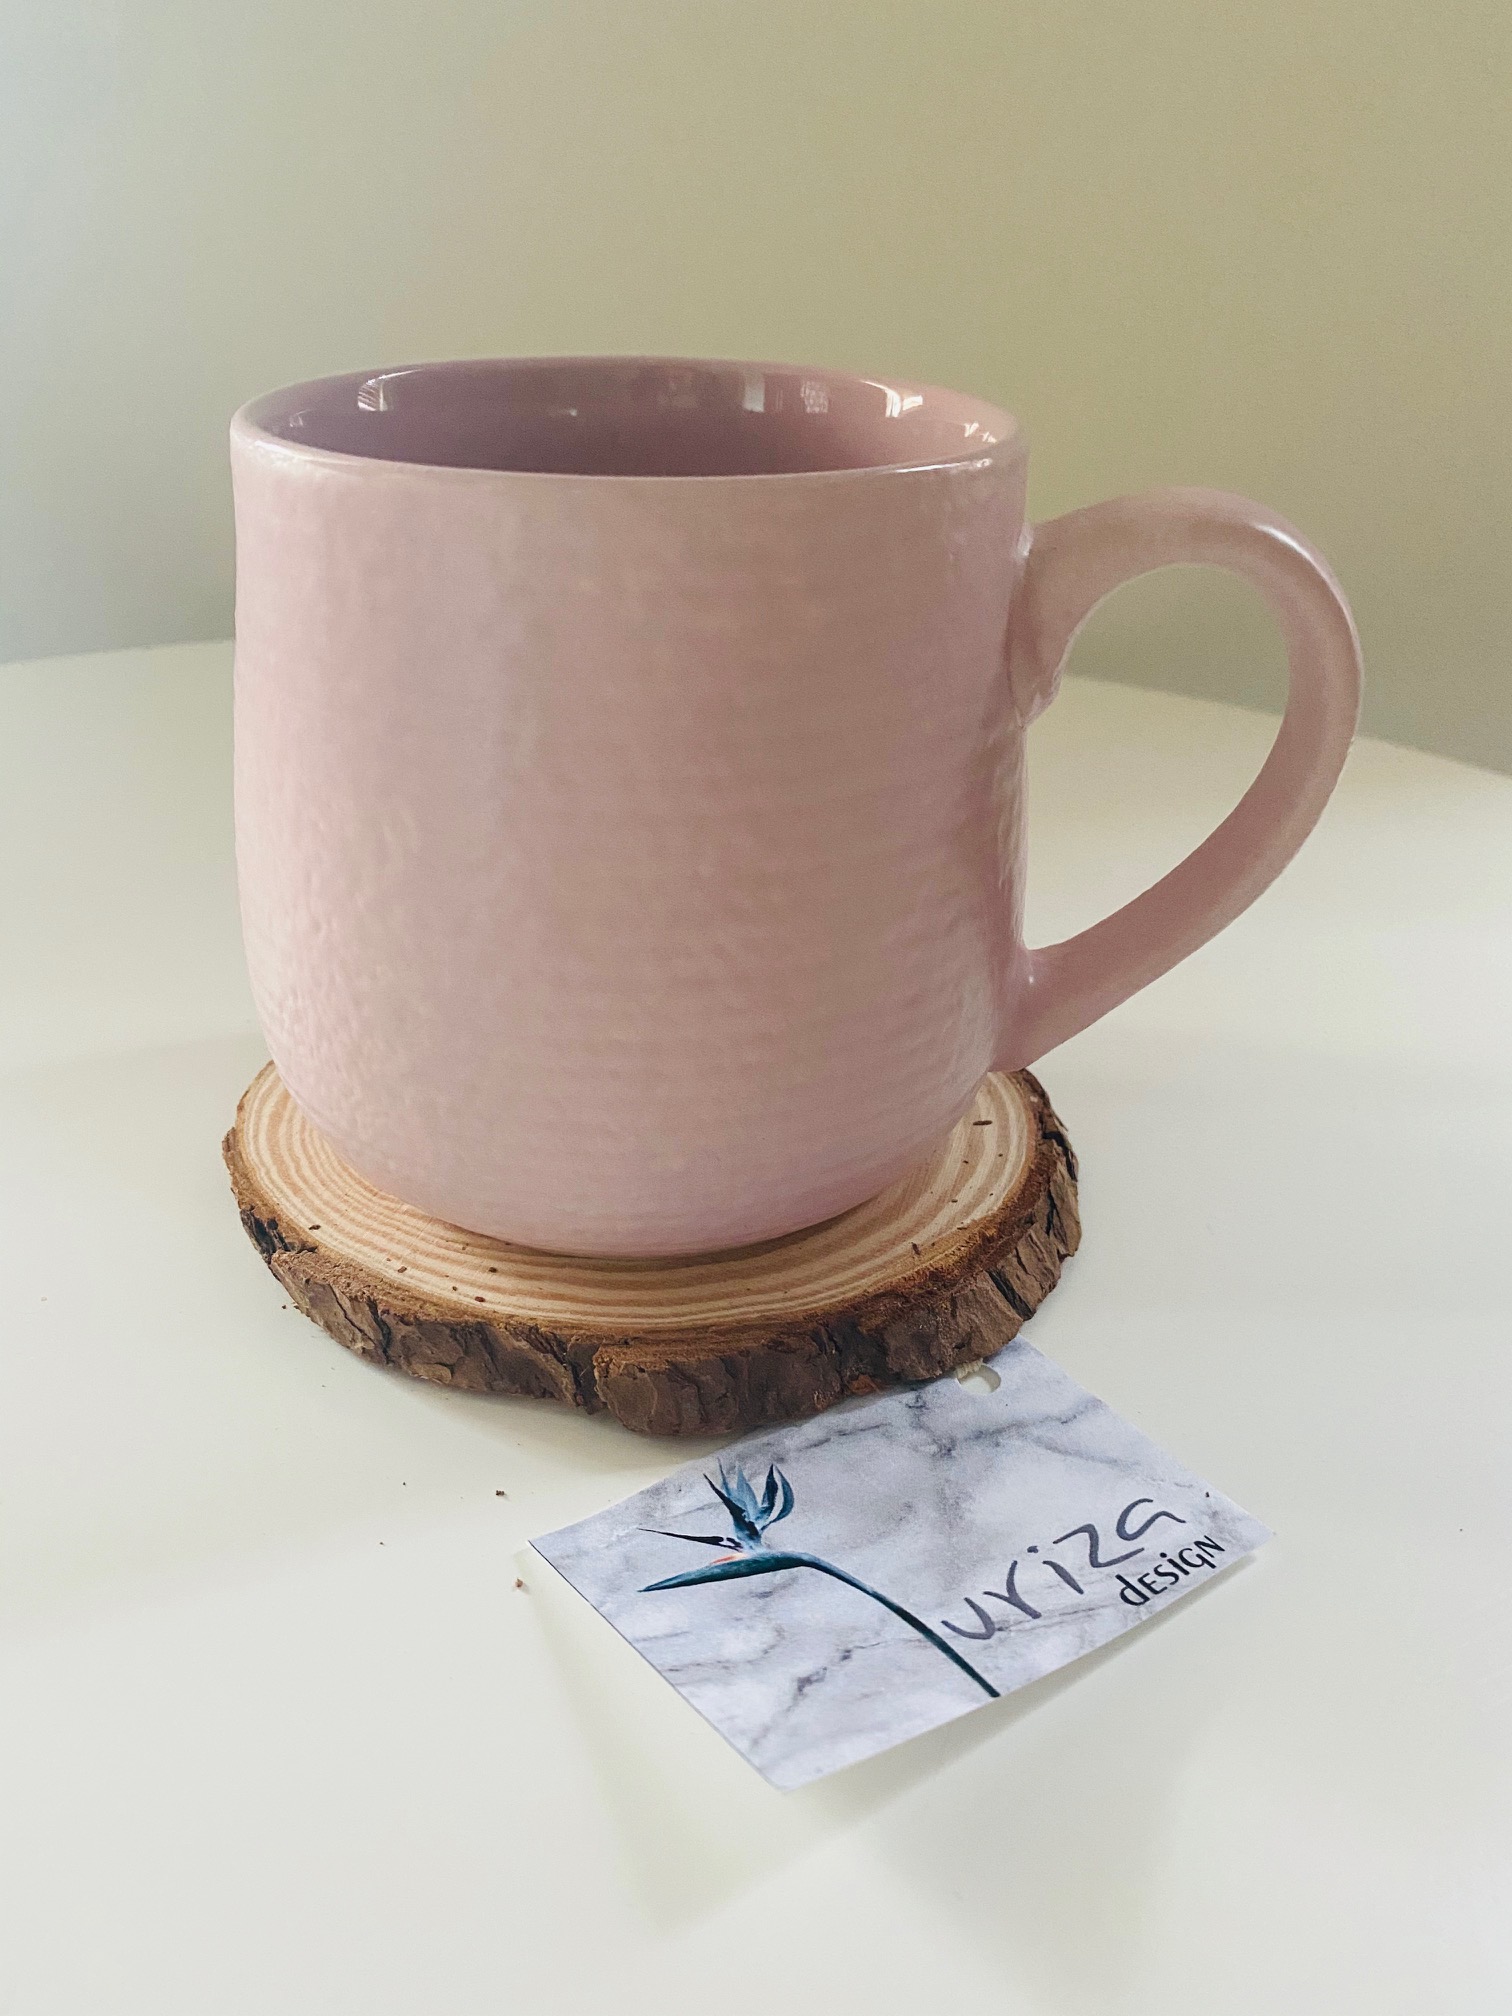 pink-mug